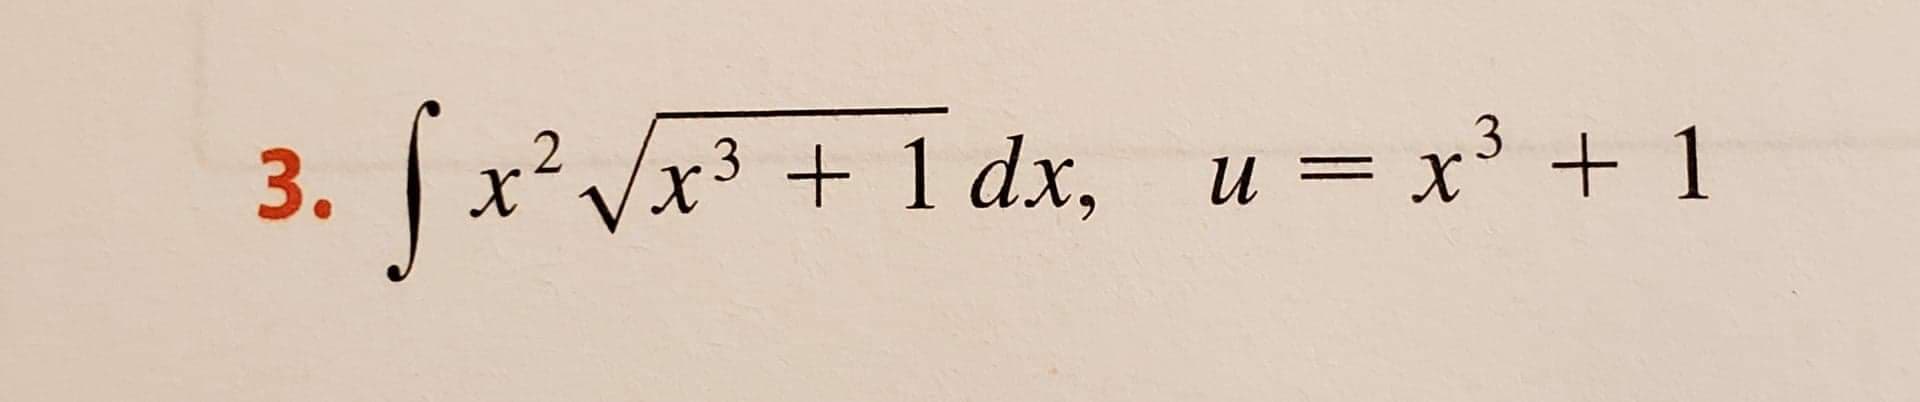 x'Vx3 + 1 dx, u = x' + 1
и
